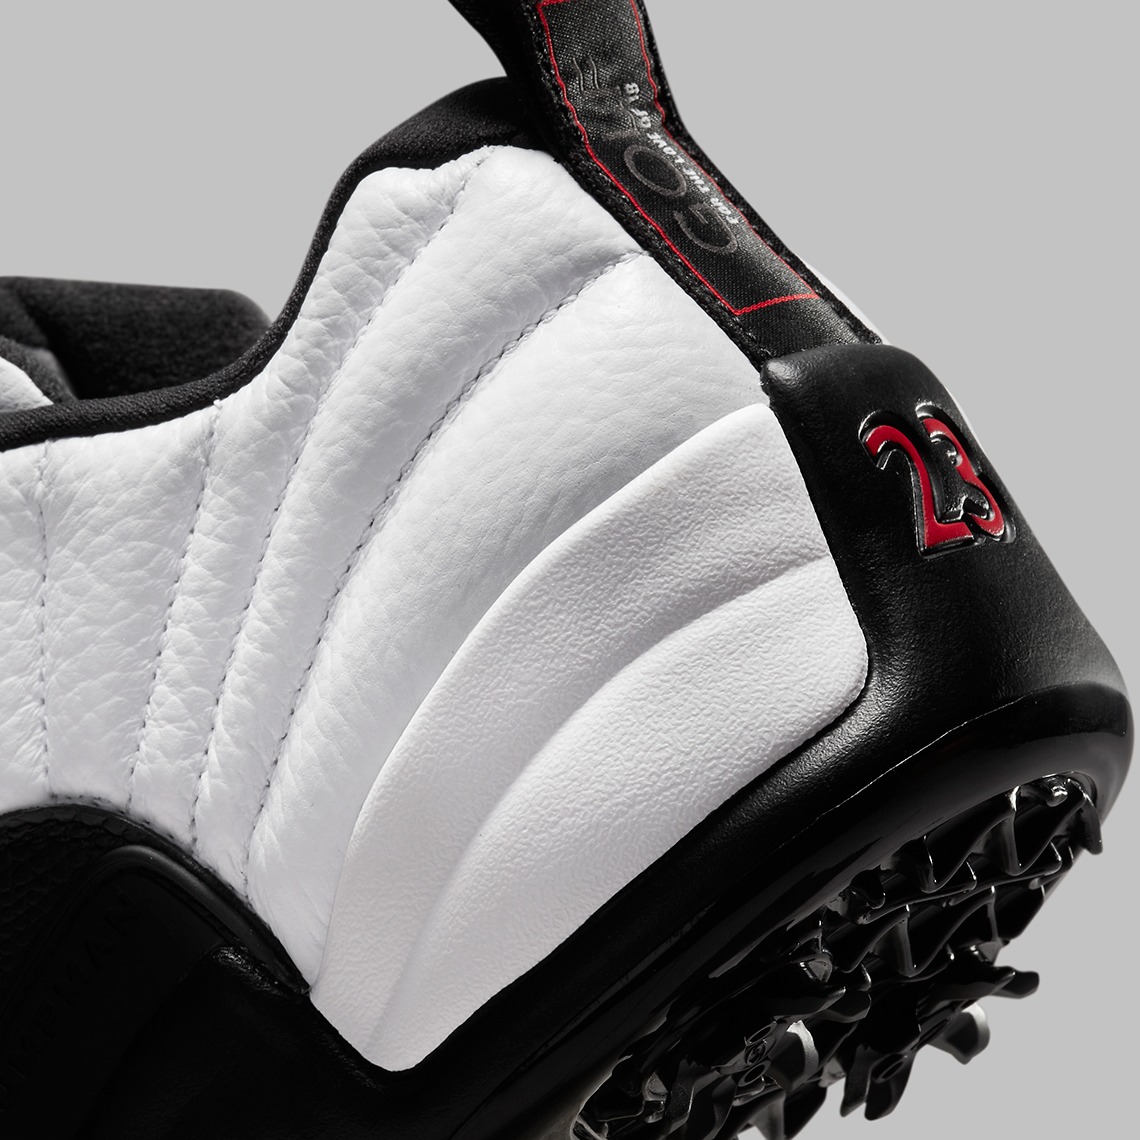 Air Jordan 12 Low Golf Taxi DH4120-100 Release Date | SneakerNews.com